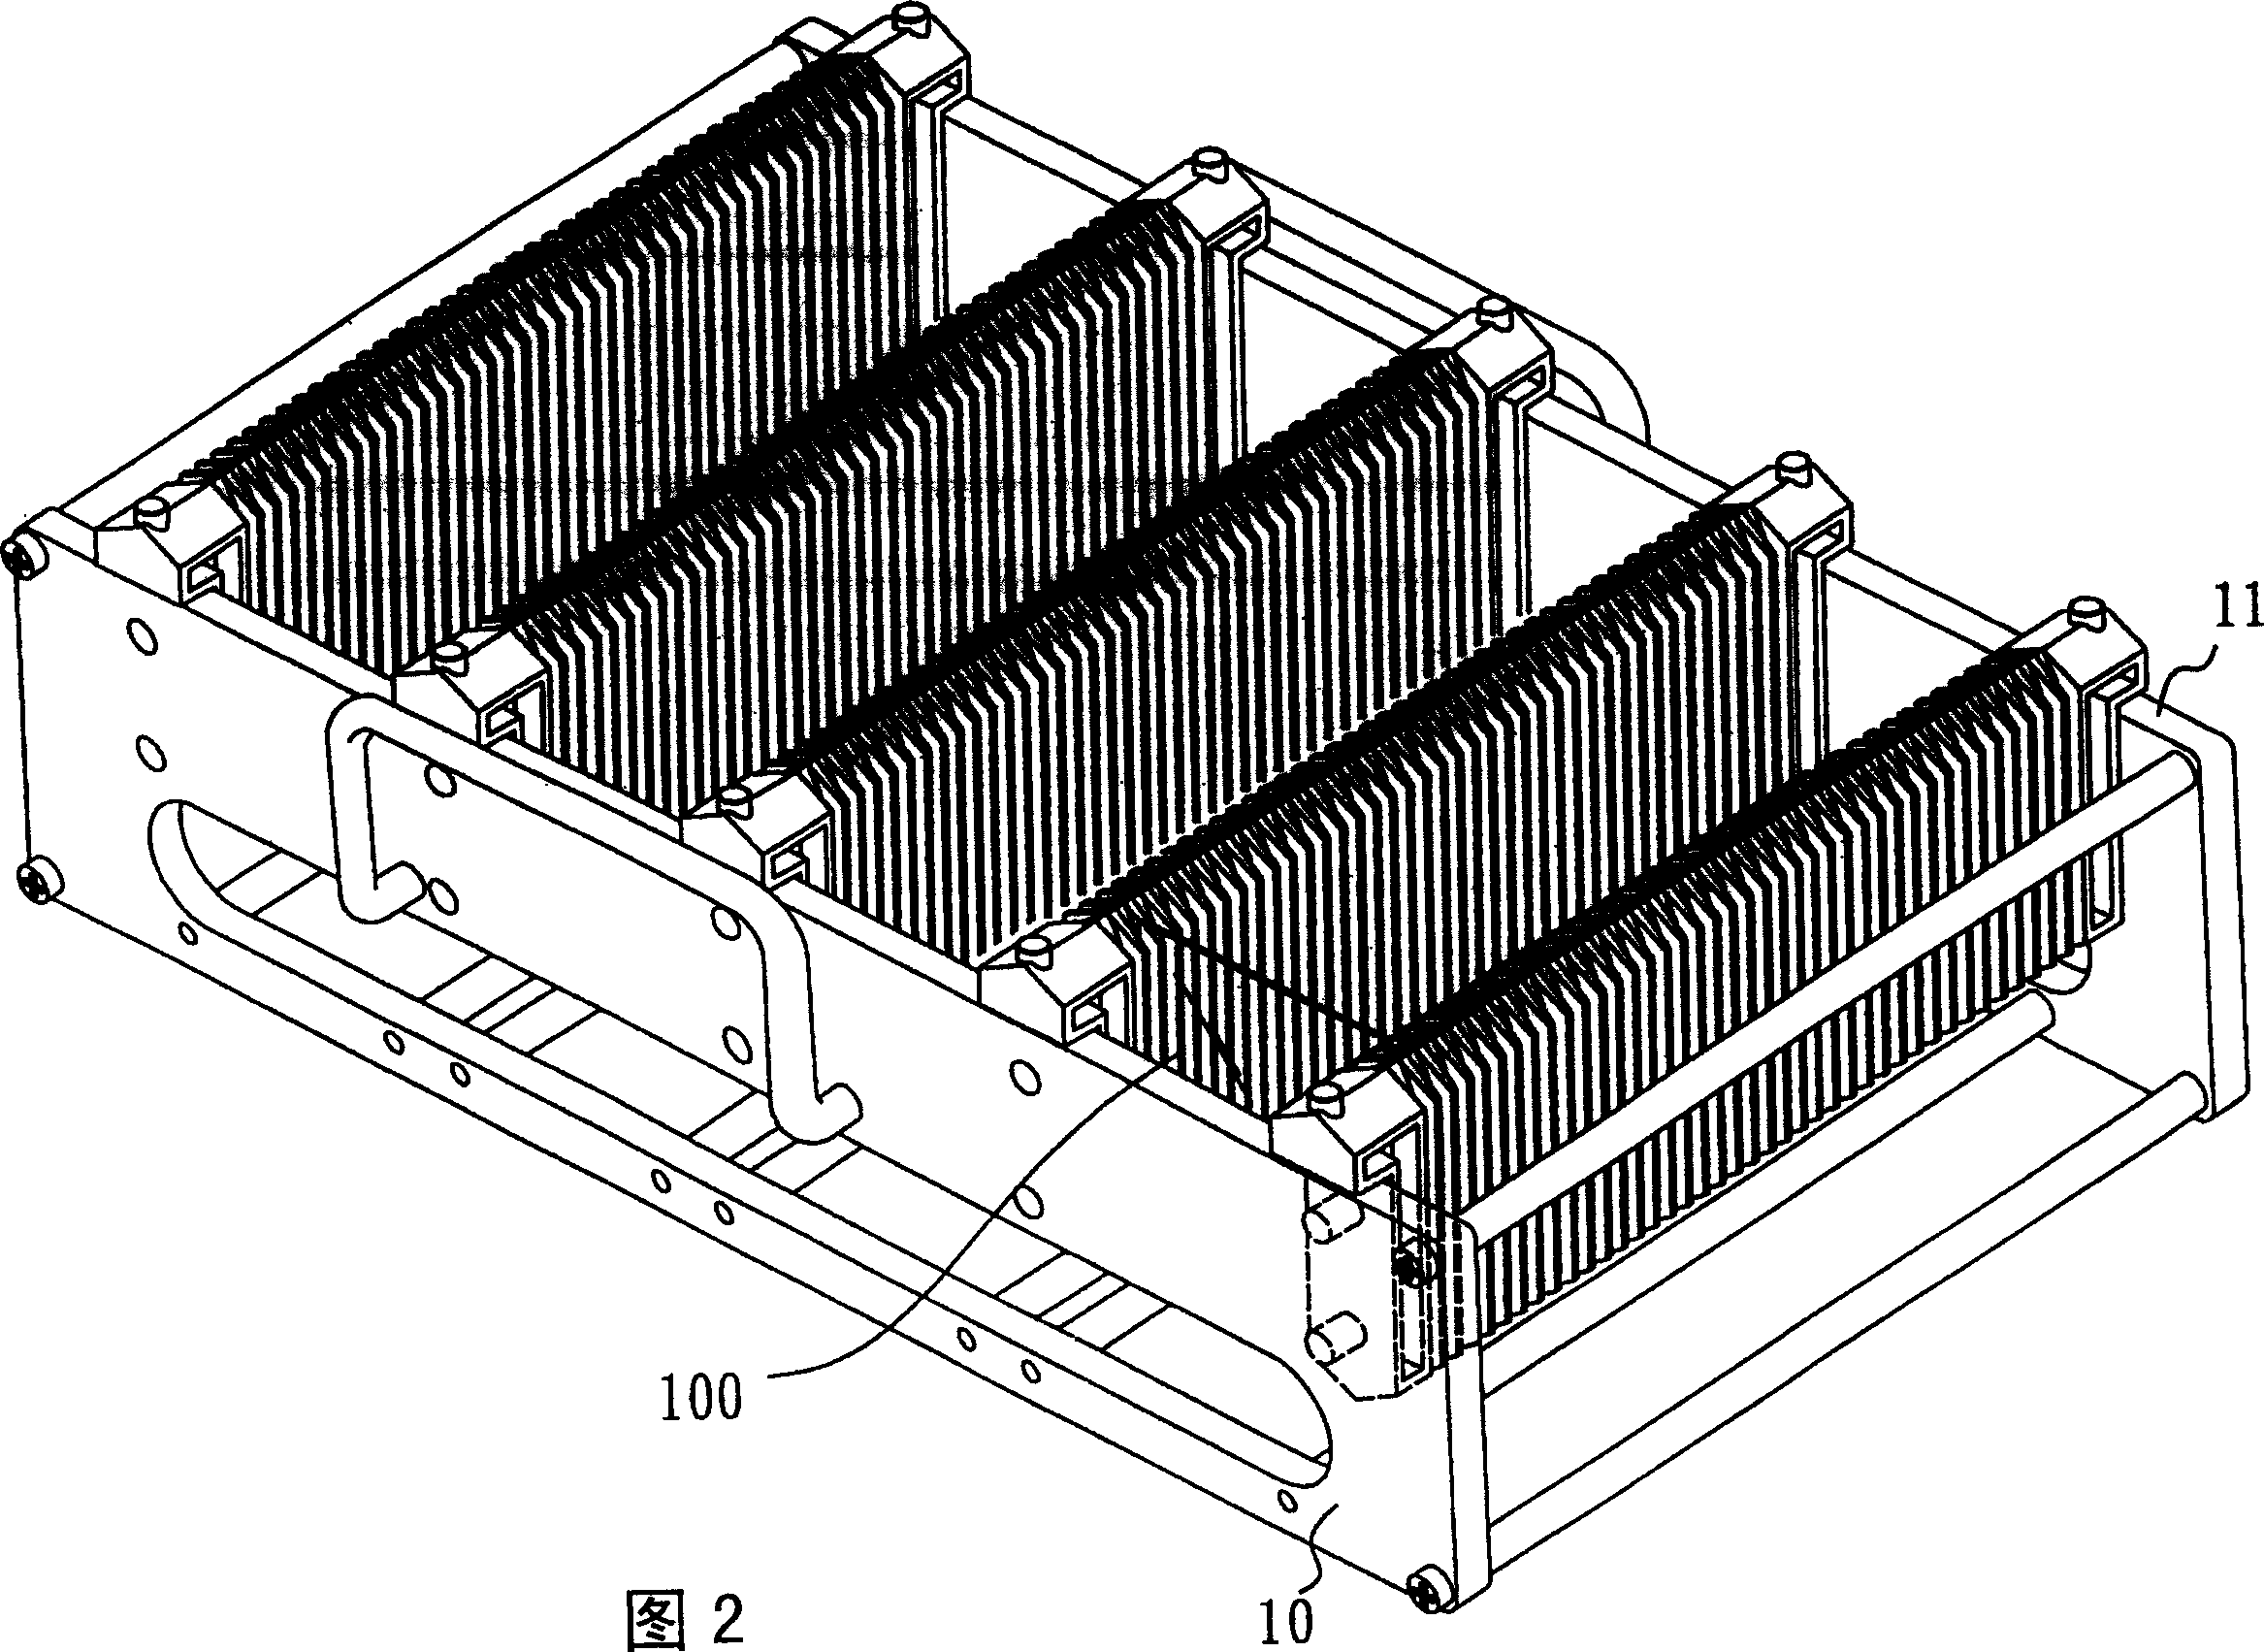 Substrate bearing apparatus